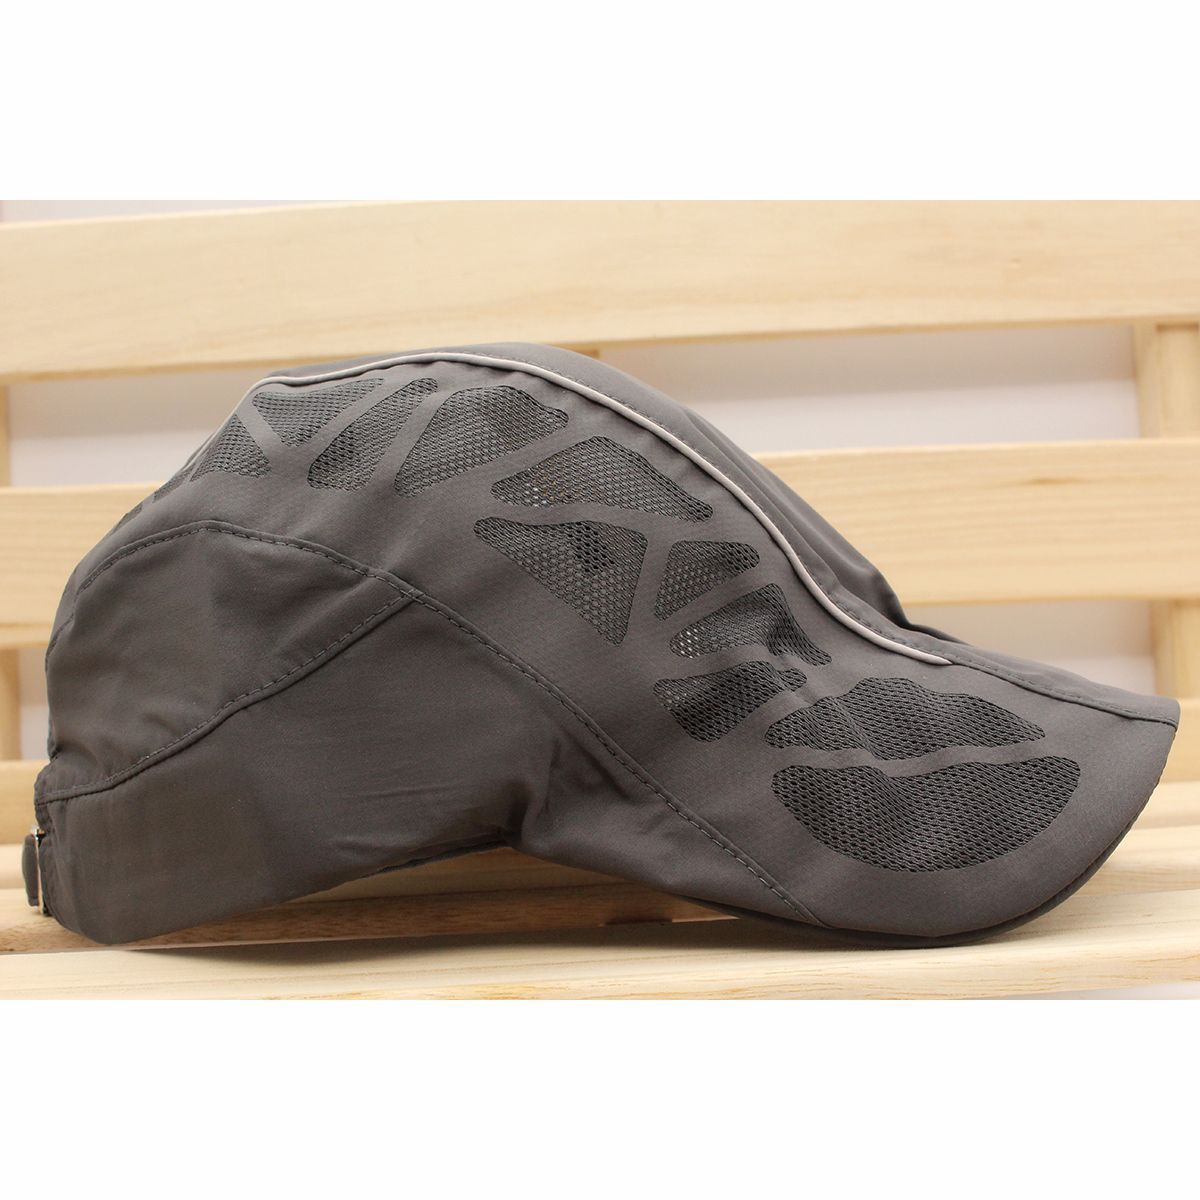 ハンチング帽子 速乾素材 メッシュ切り替え ラインデザイン 通気 帽子・キャップ 56cm~58cm HC14-8